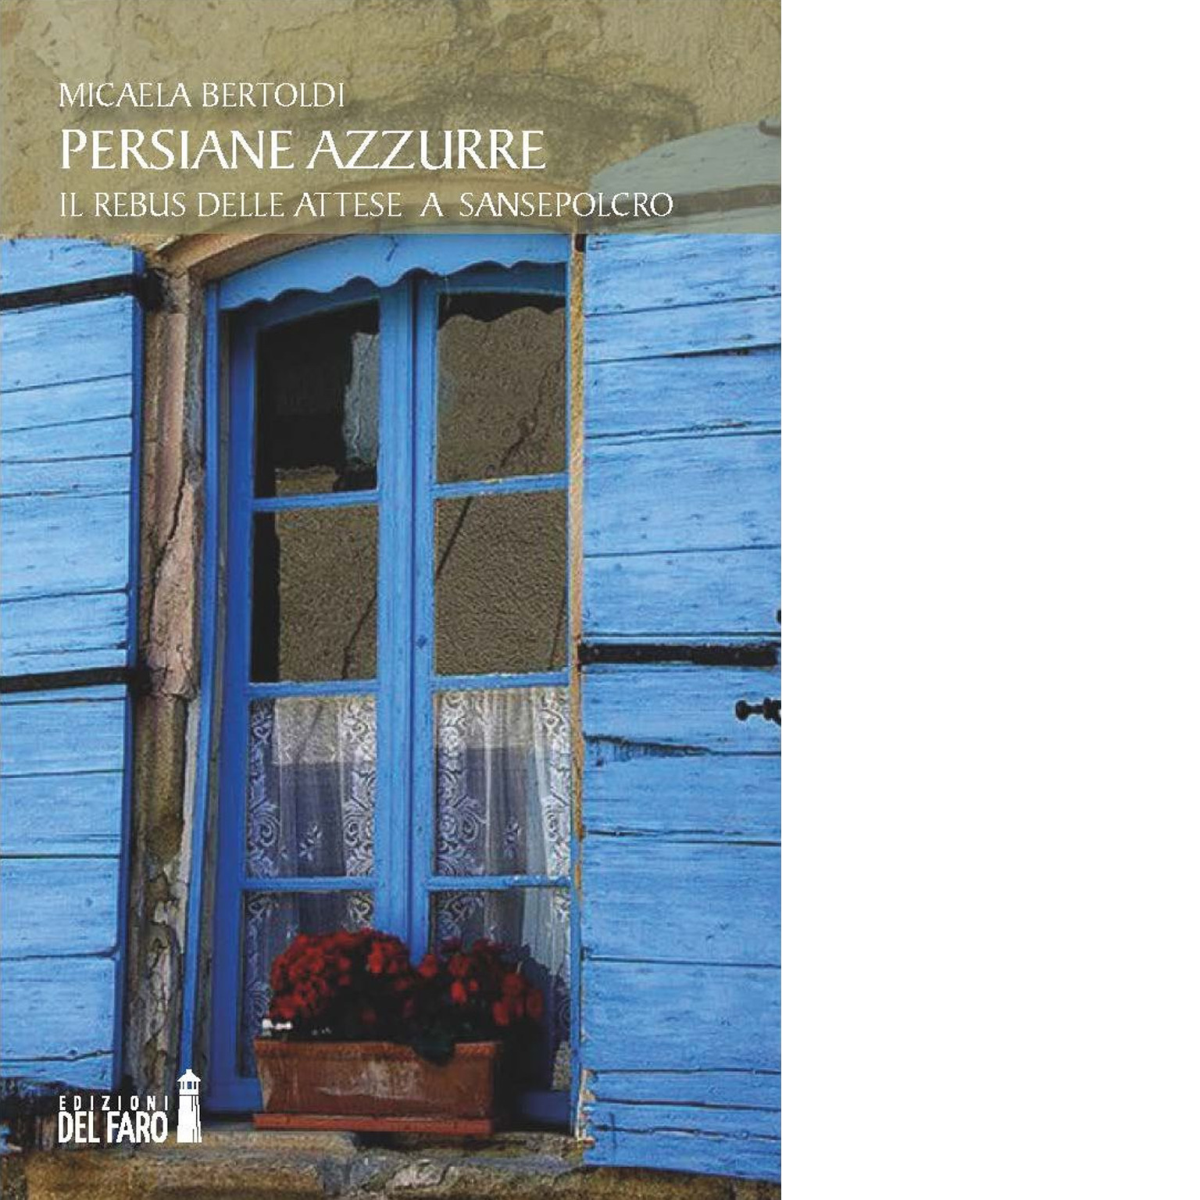 Persiane azzurre di Bertoldi Micaela - Edizioni Del faro, 2017